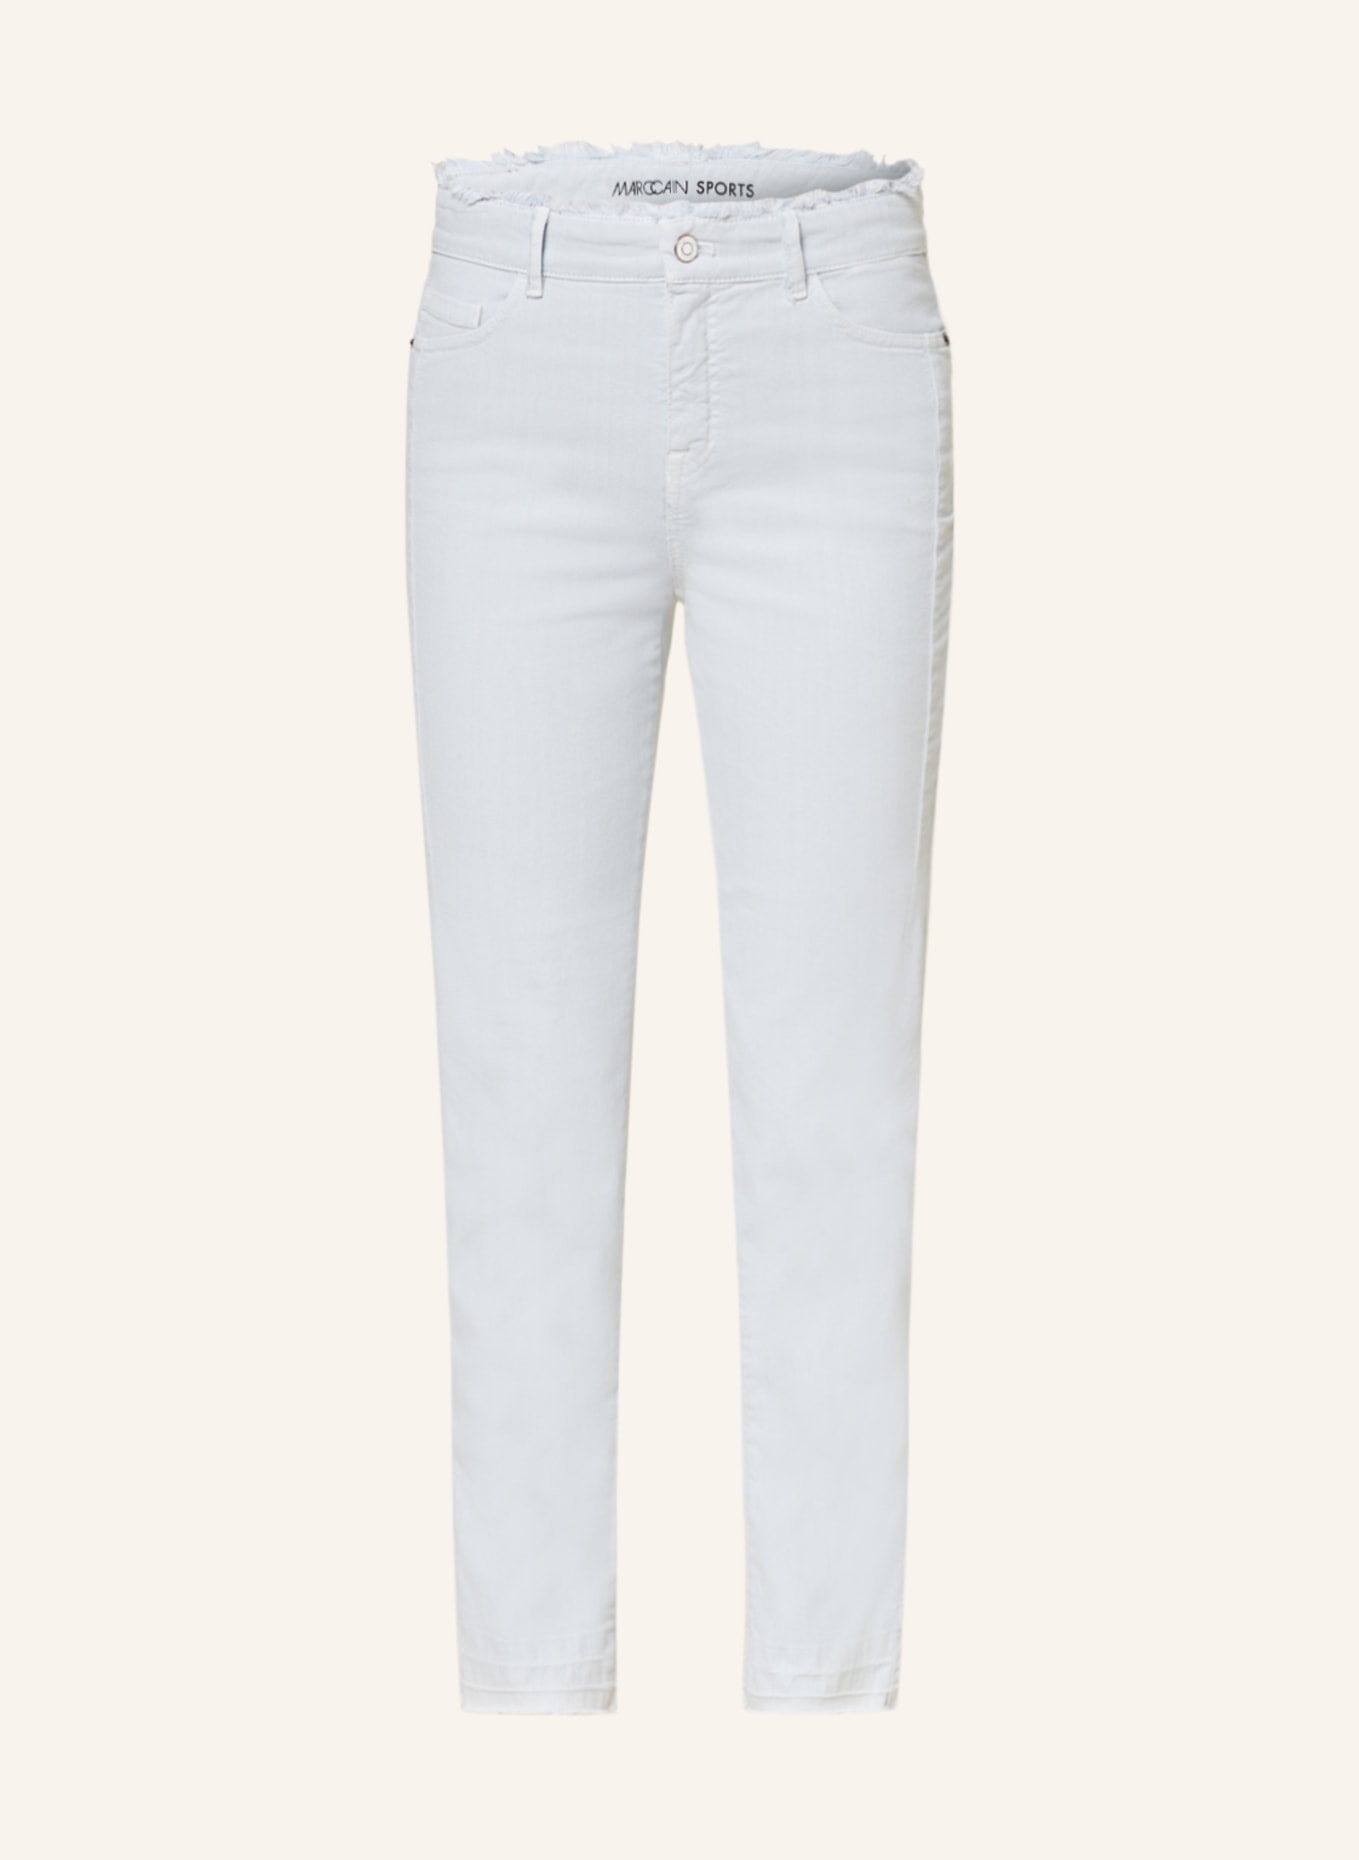 MARC CAIN Jeans SILEA, Farbe: 304 soft powder blue (Bild 1)